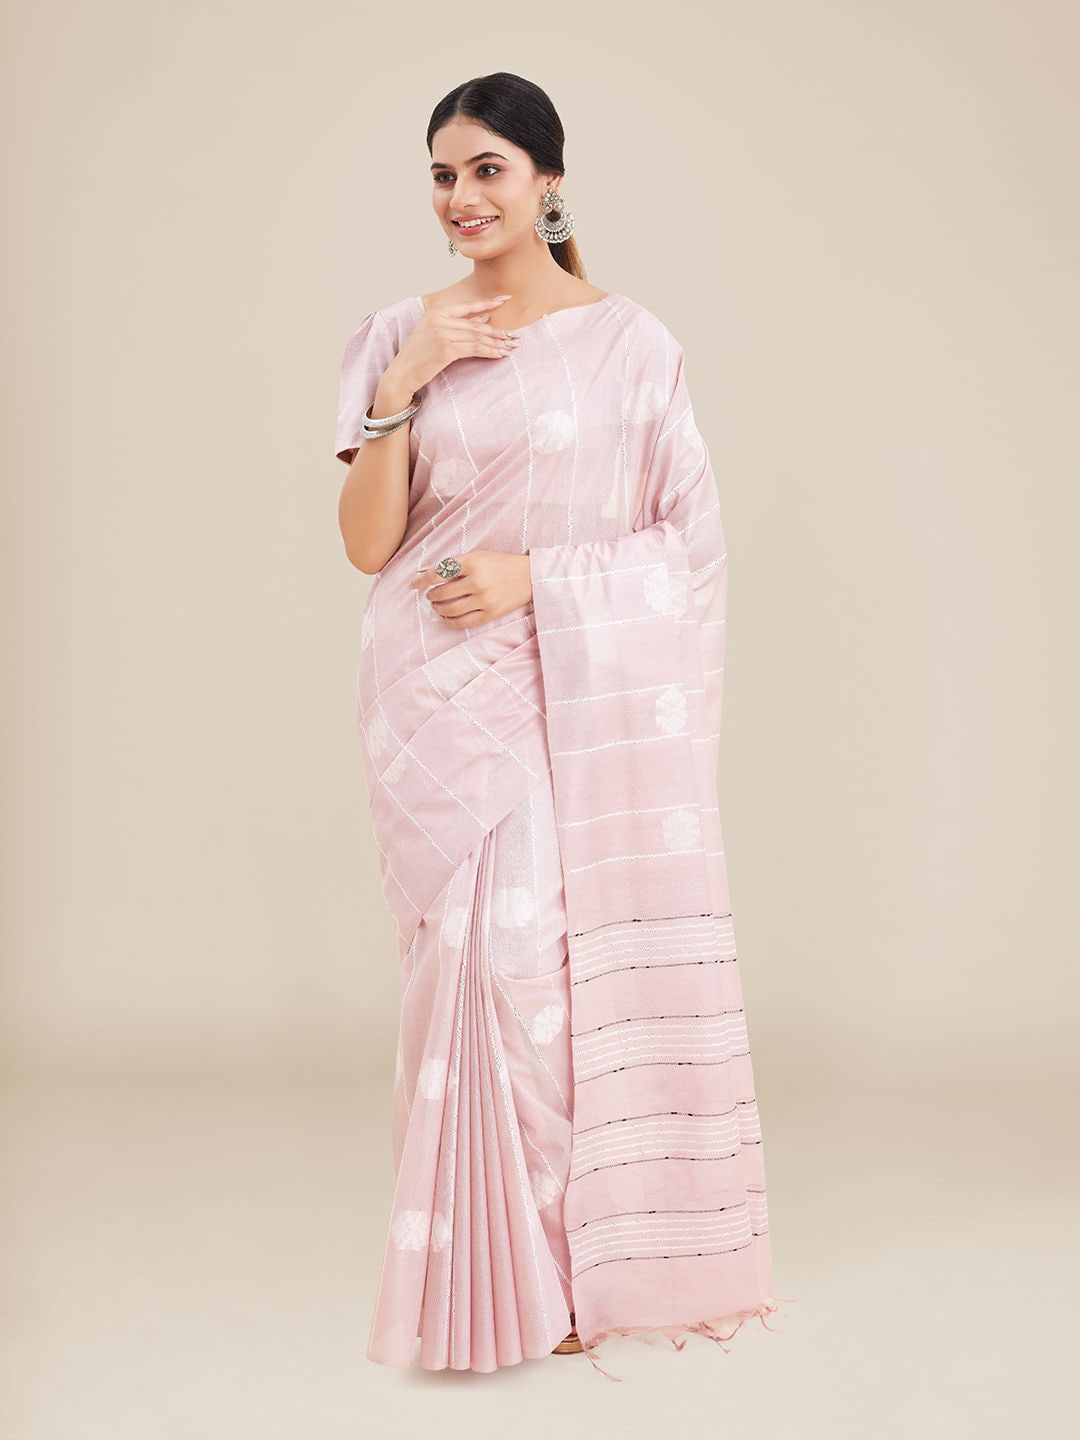 Kalyan Silks Pink Ethnic Motifs Art Silk Tussar Saree Price in India